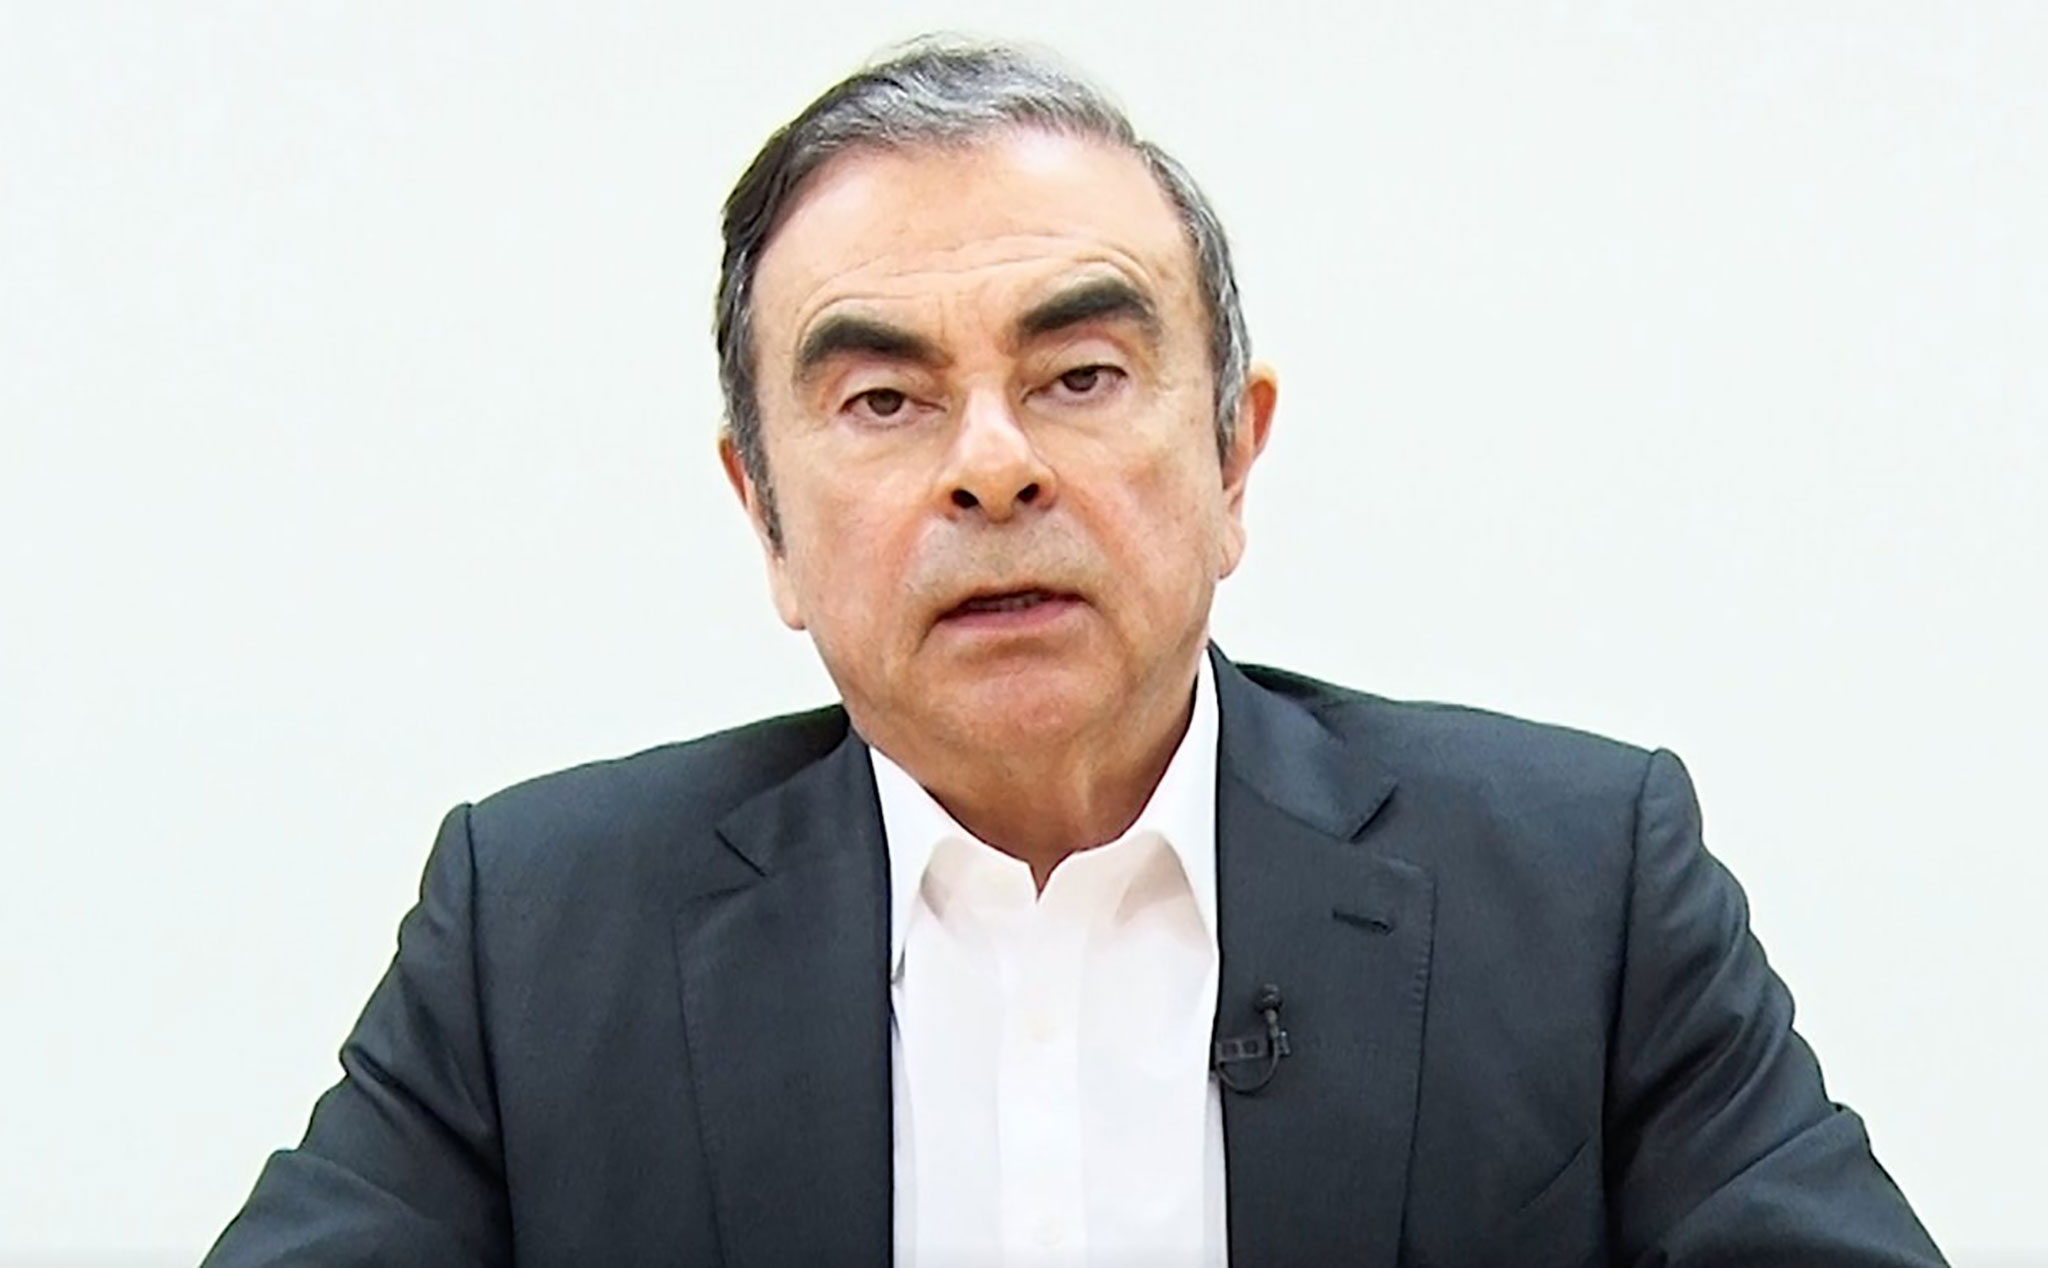 Chủ tịch Nissan - Carlos Ghosn: "Tôi vô tội và bị hãm hại"